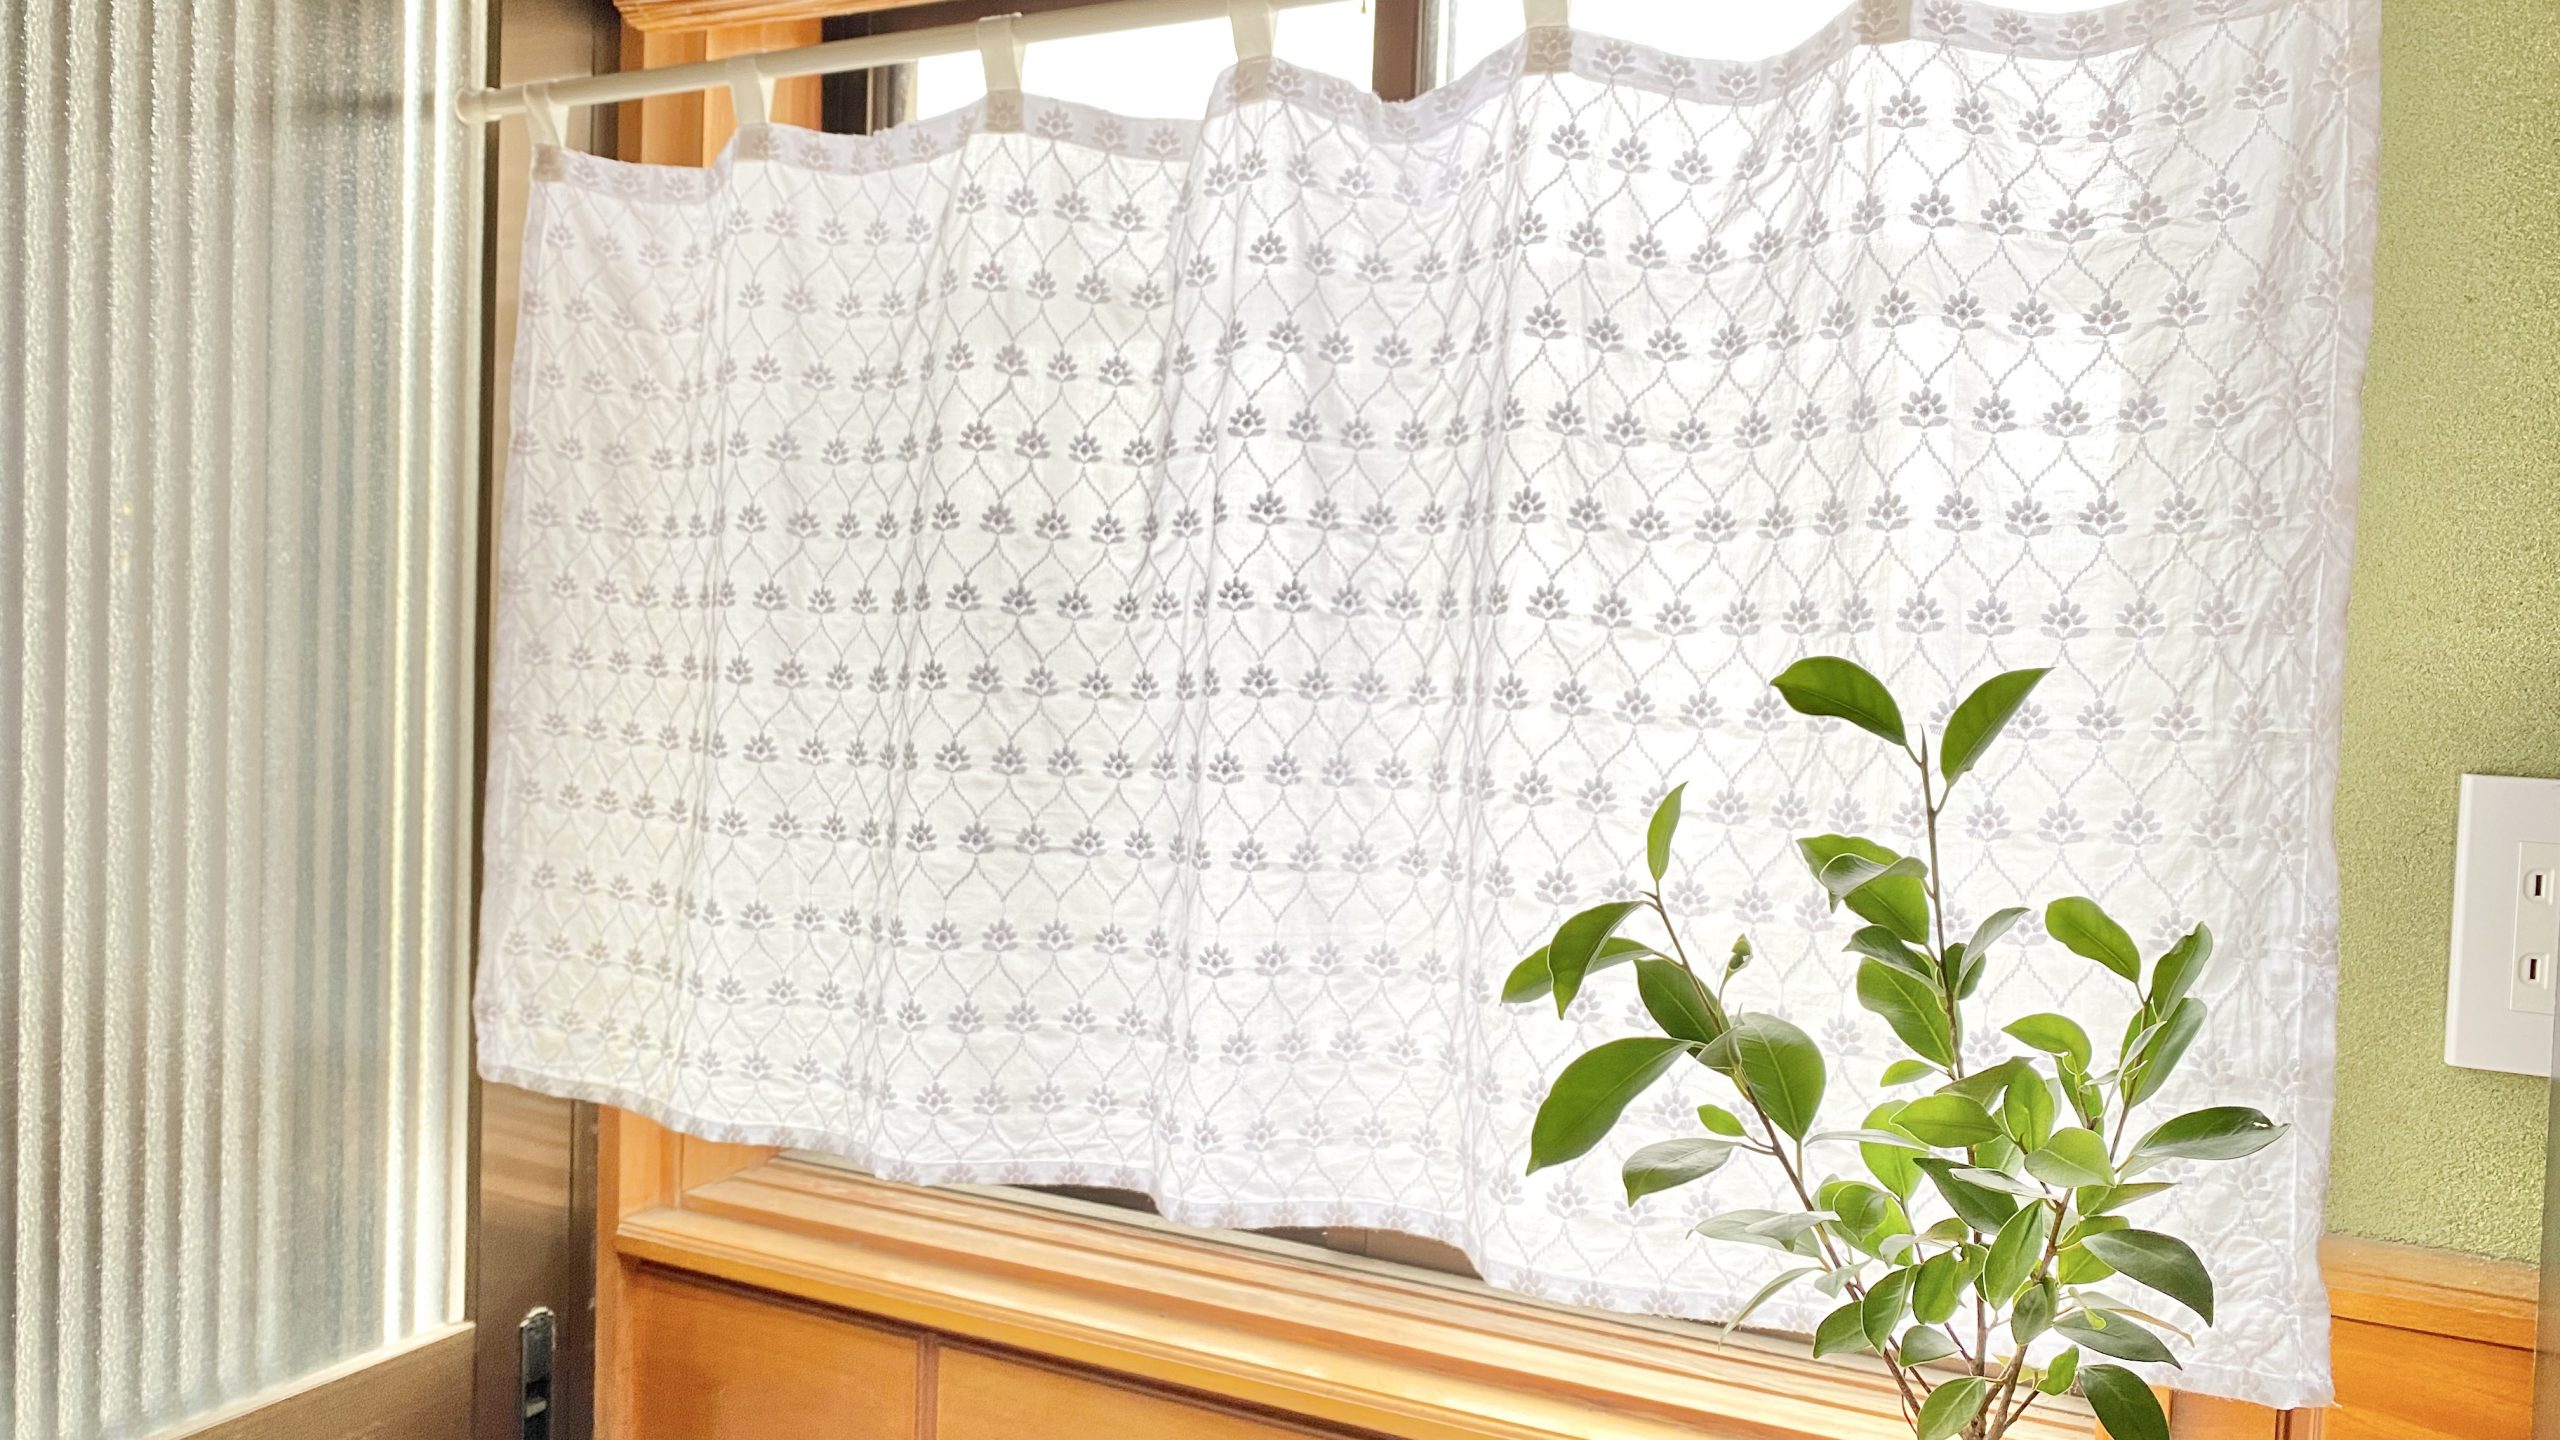 カフェカーテンの作り方-完成|初心者向け洋裁メディア縫いナビ|丸石織物